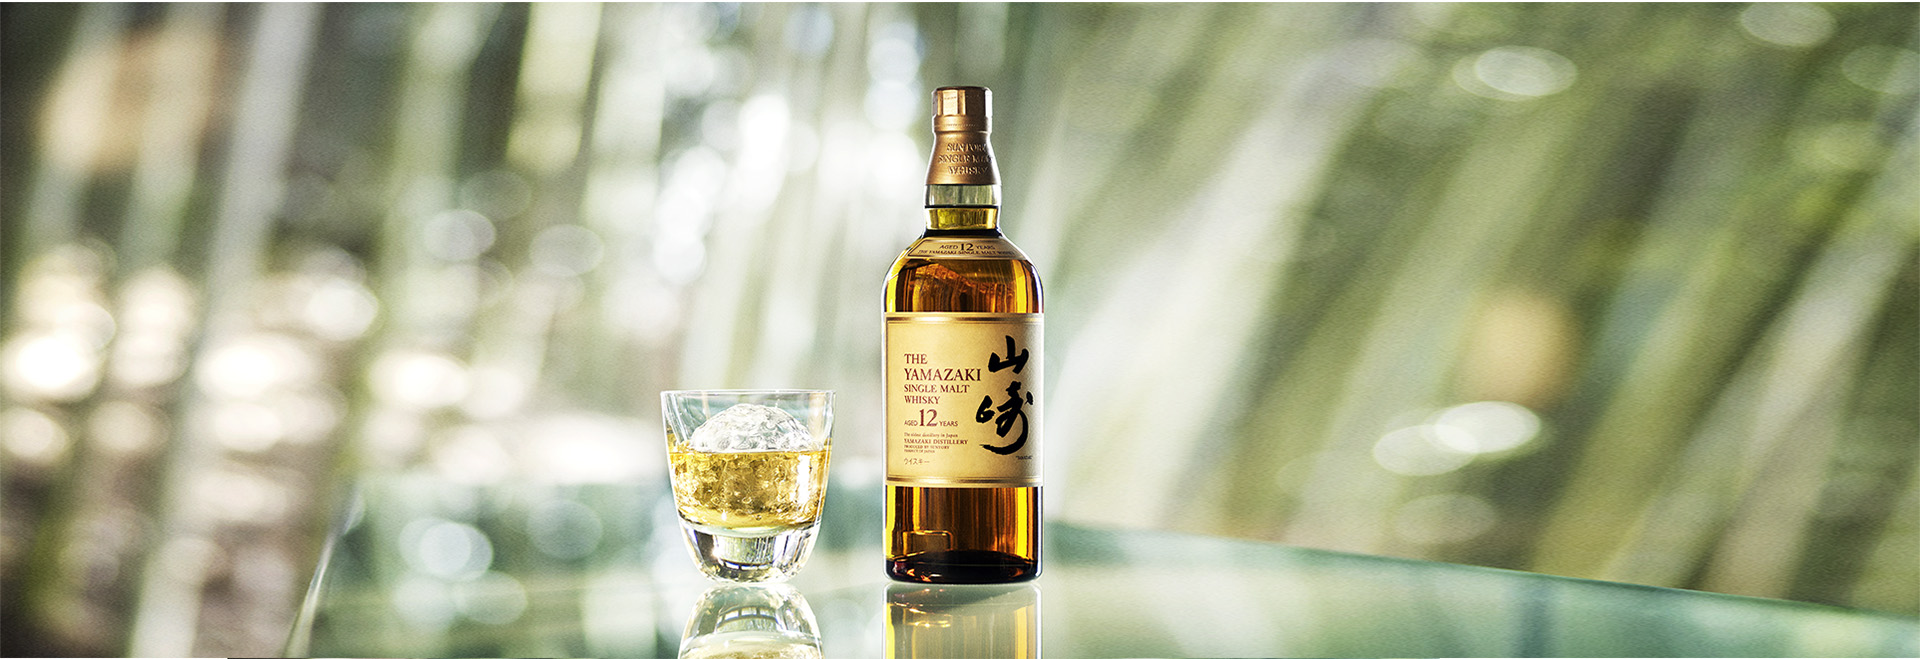 山崎12年日本威士忌700ml - 酒酒酒全台最大的酒品詢價網